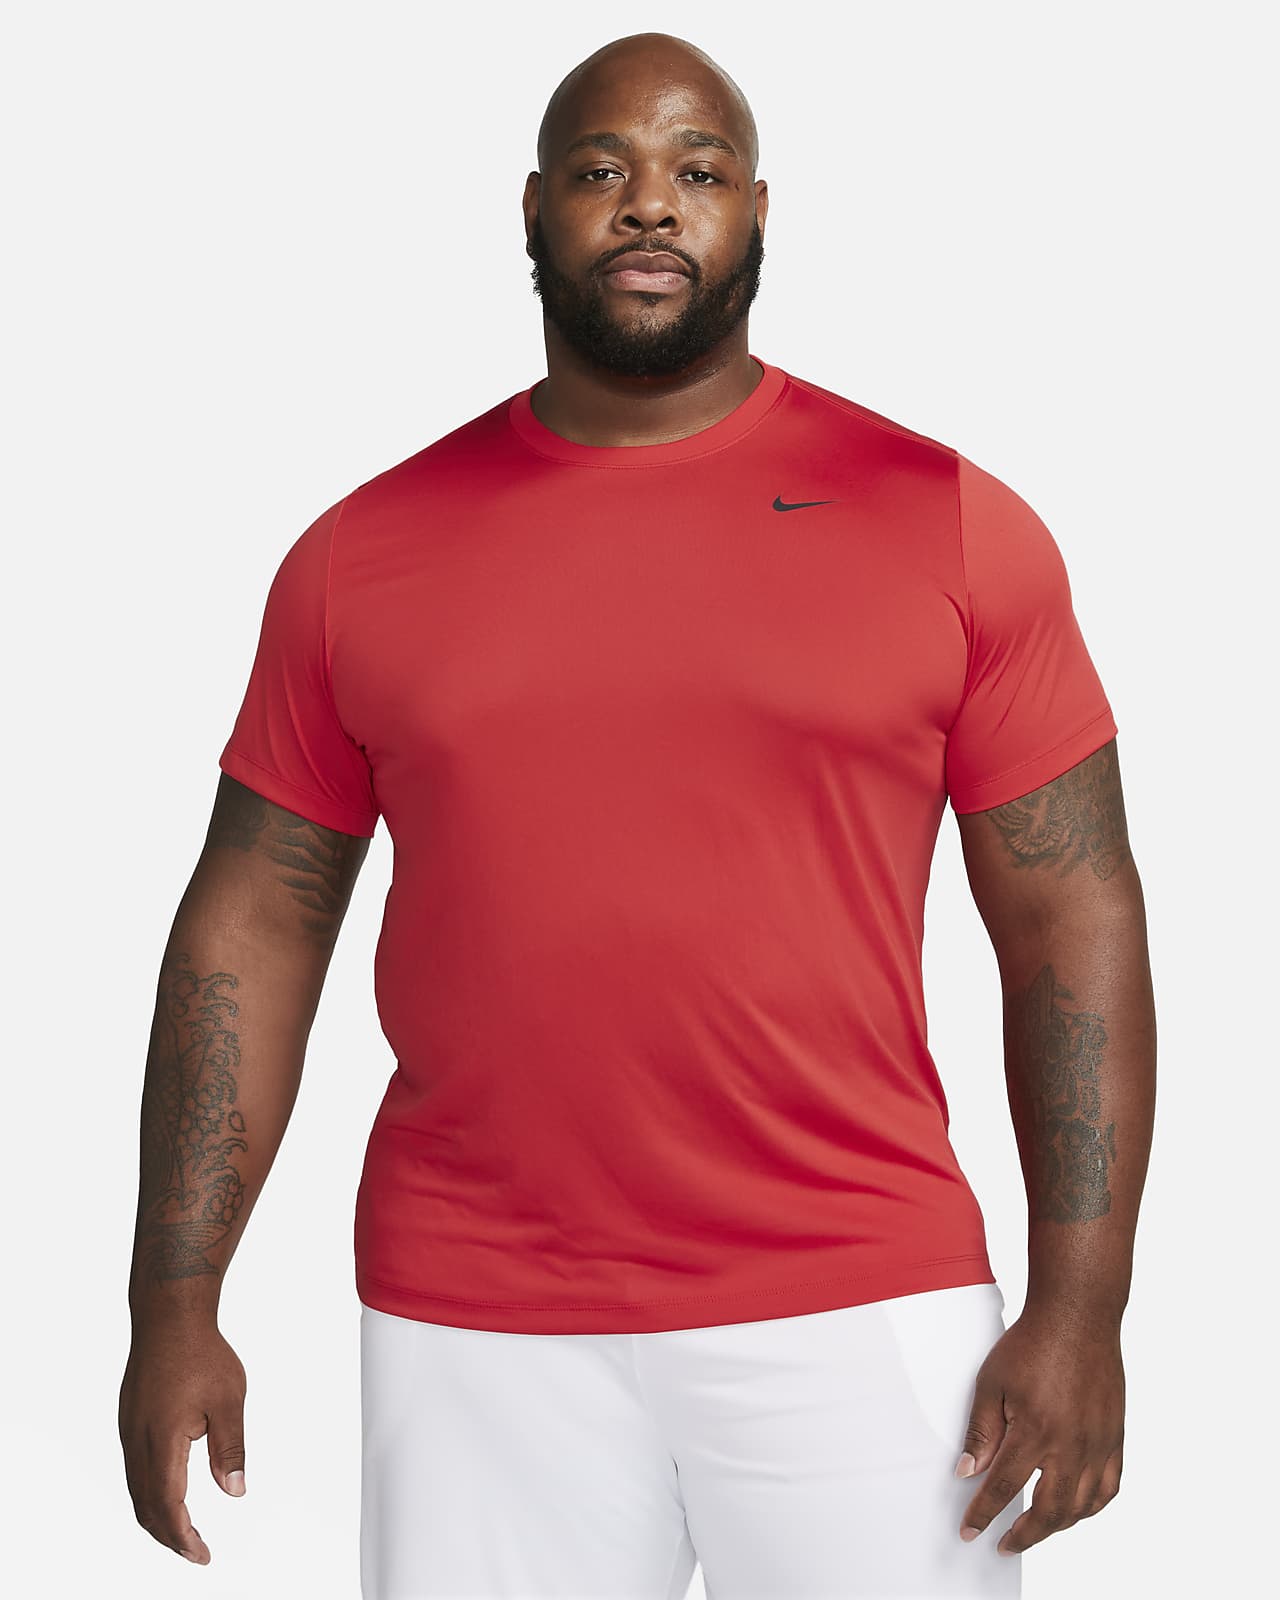 yderligere Forstad kæmpe stor Nike Dri-FIT Legend Men's Fitness T-Shirt. Nike.com